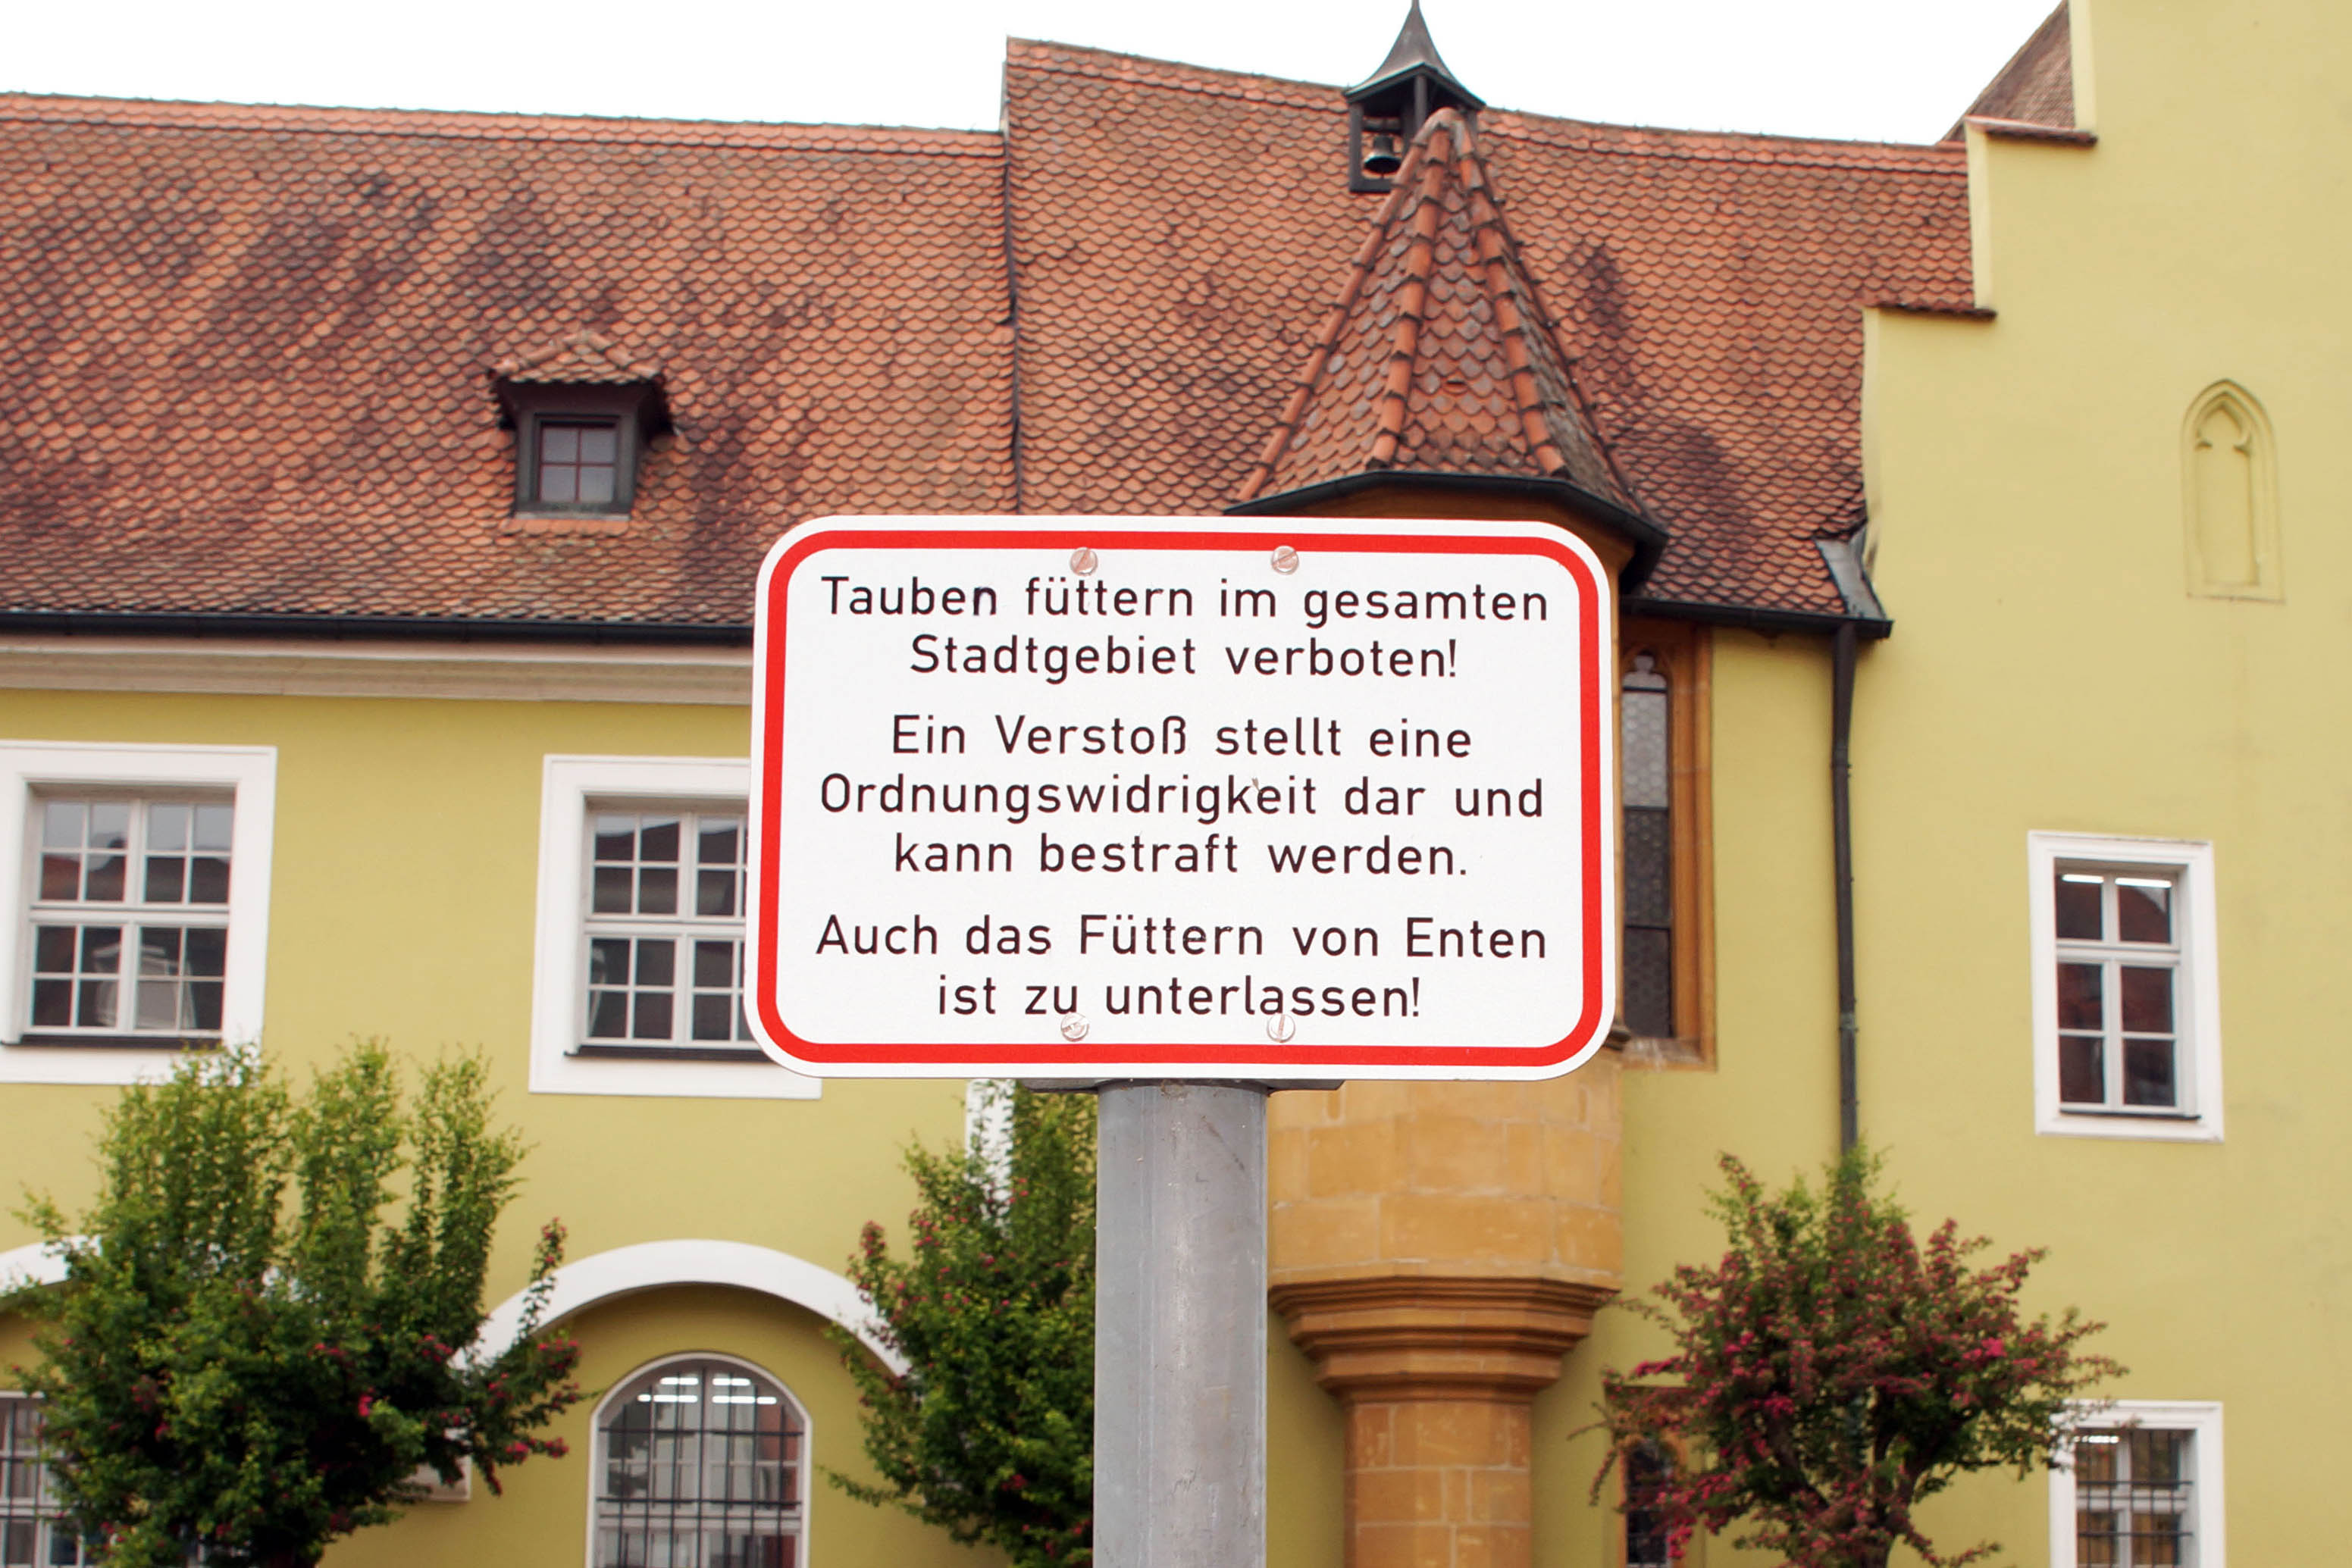 In Amberg ist Tauben füttern verboten